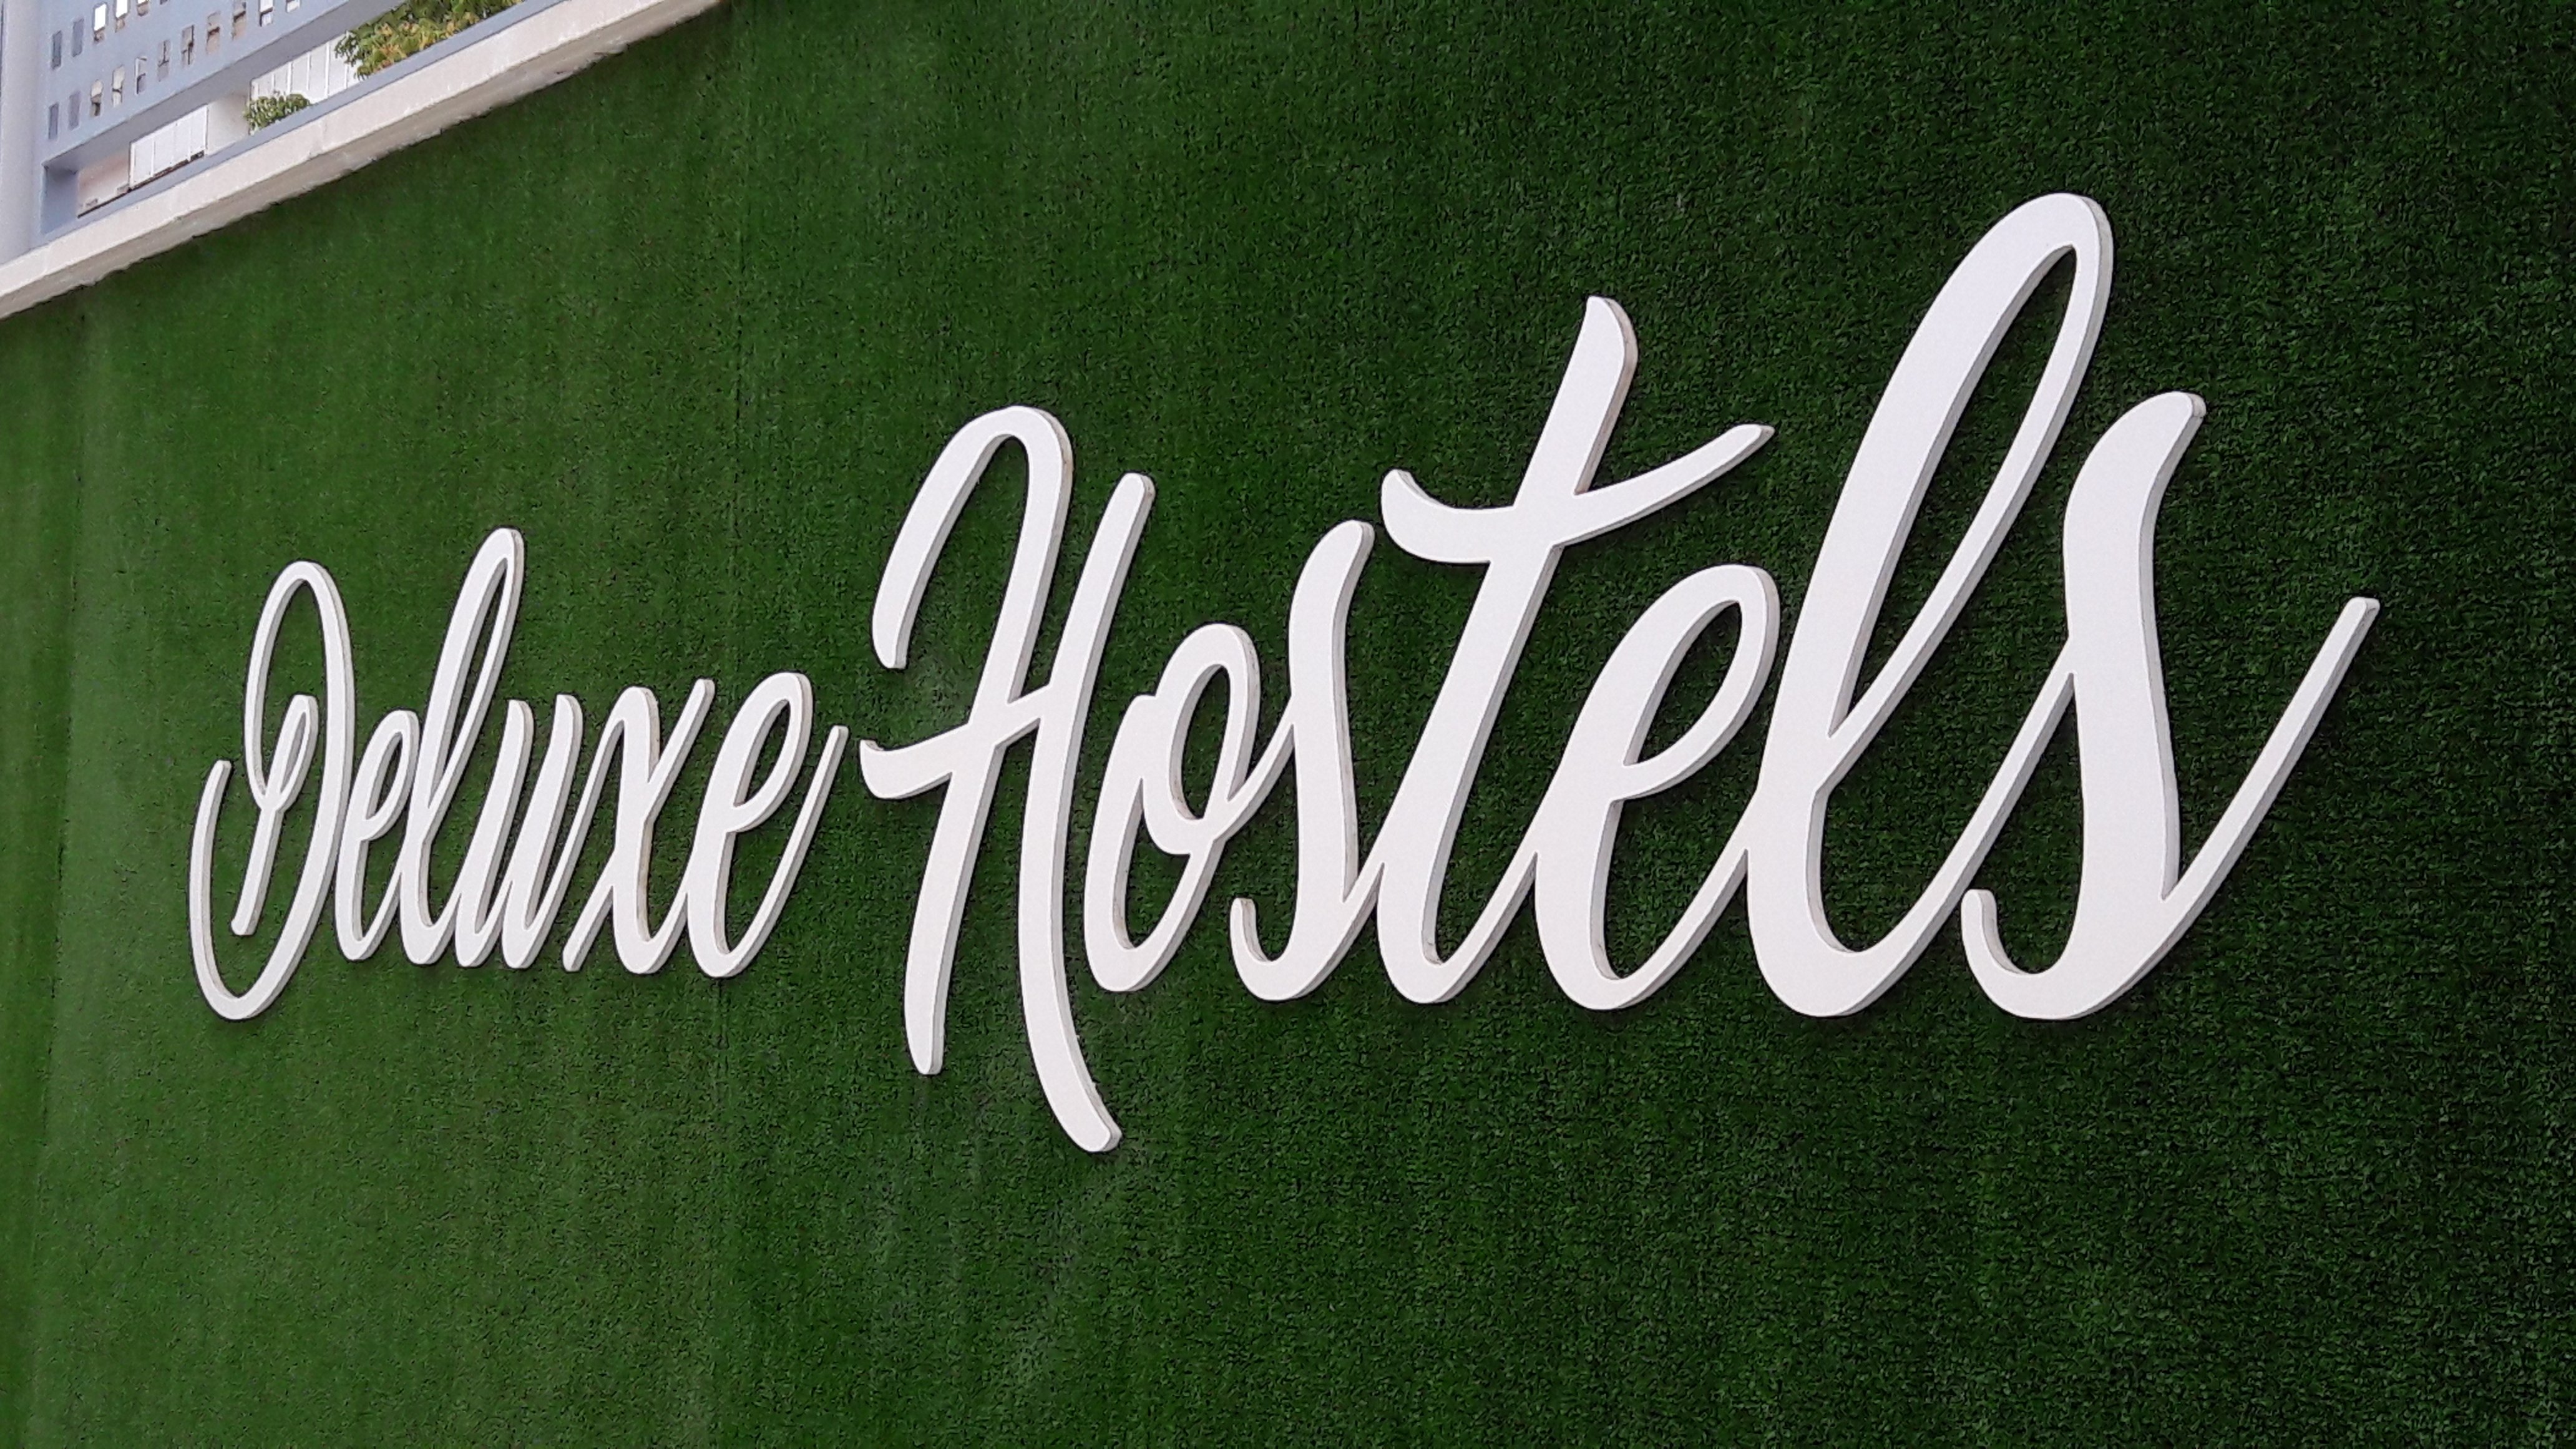 Hotel photo 20 of Deluxe Hostels & Suites Merida.